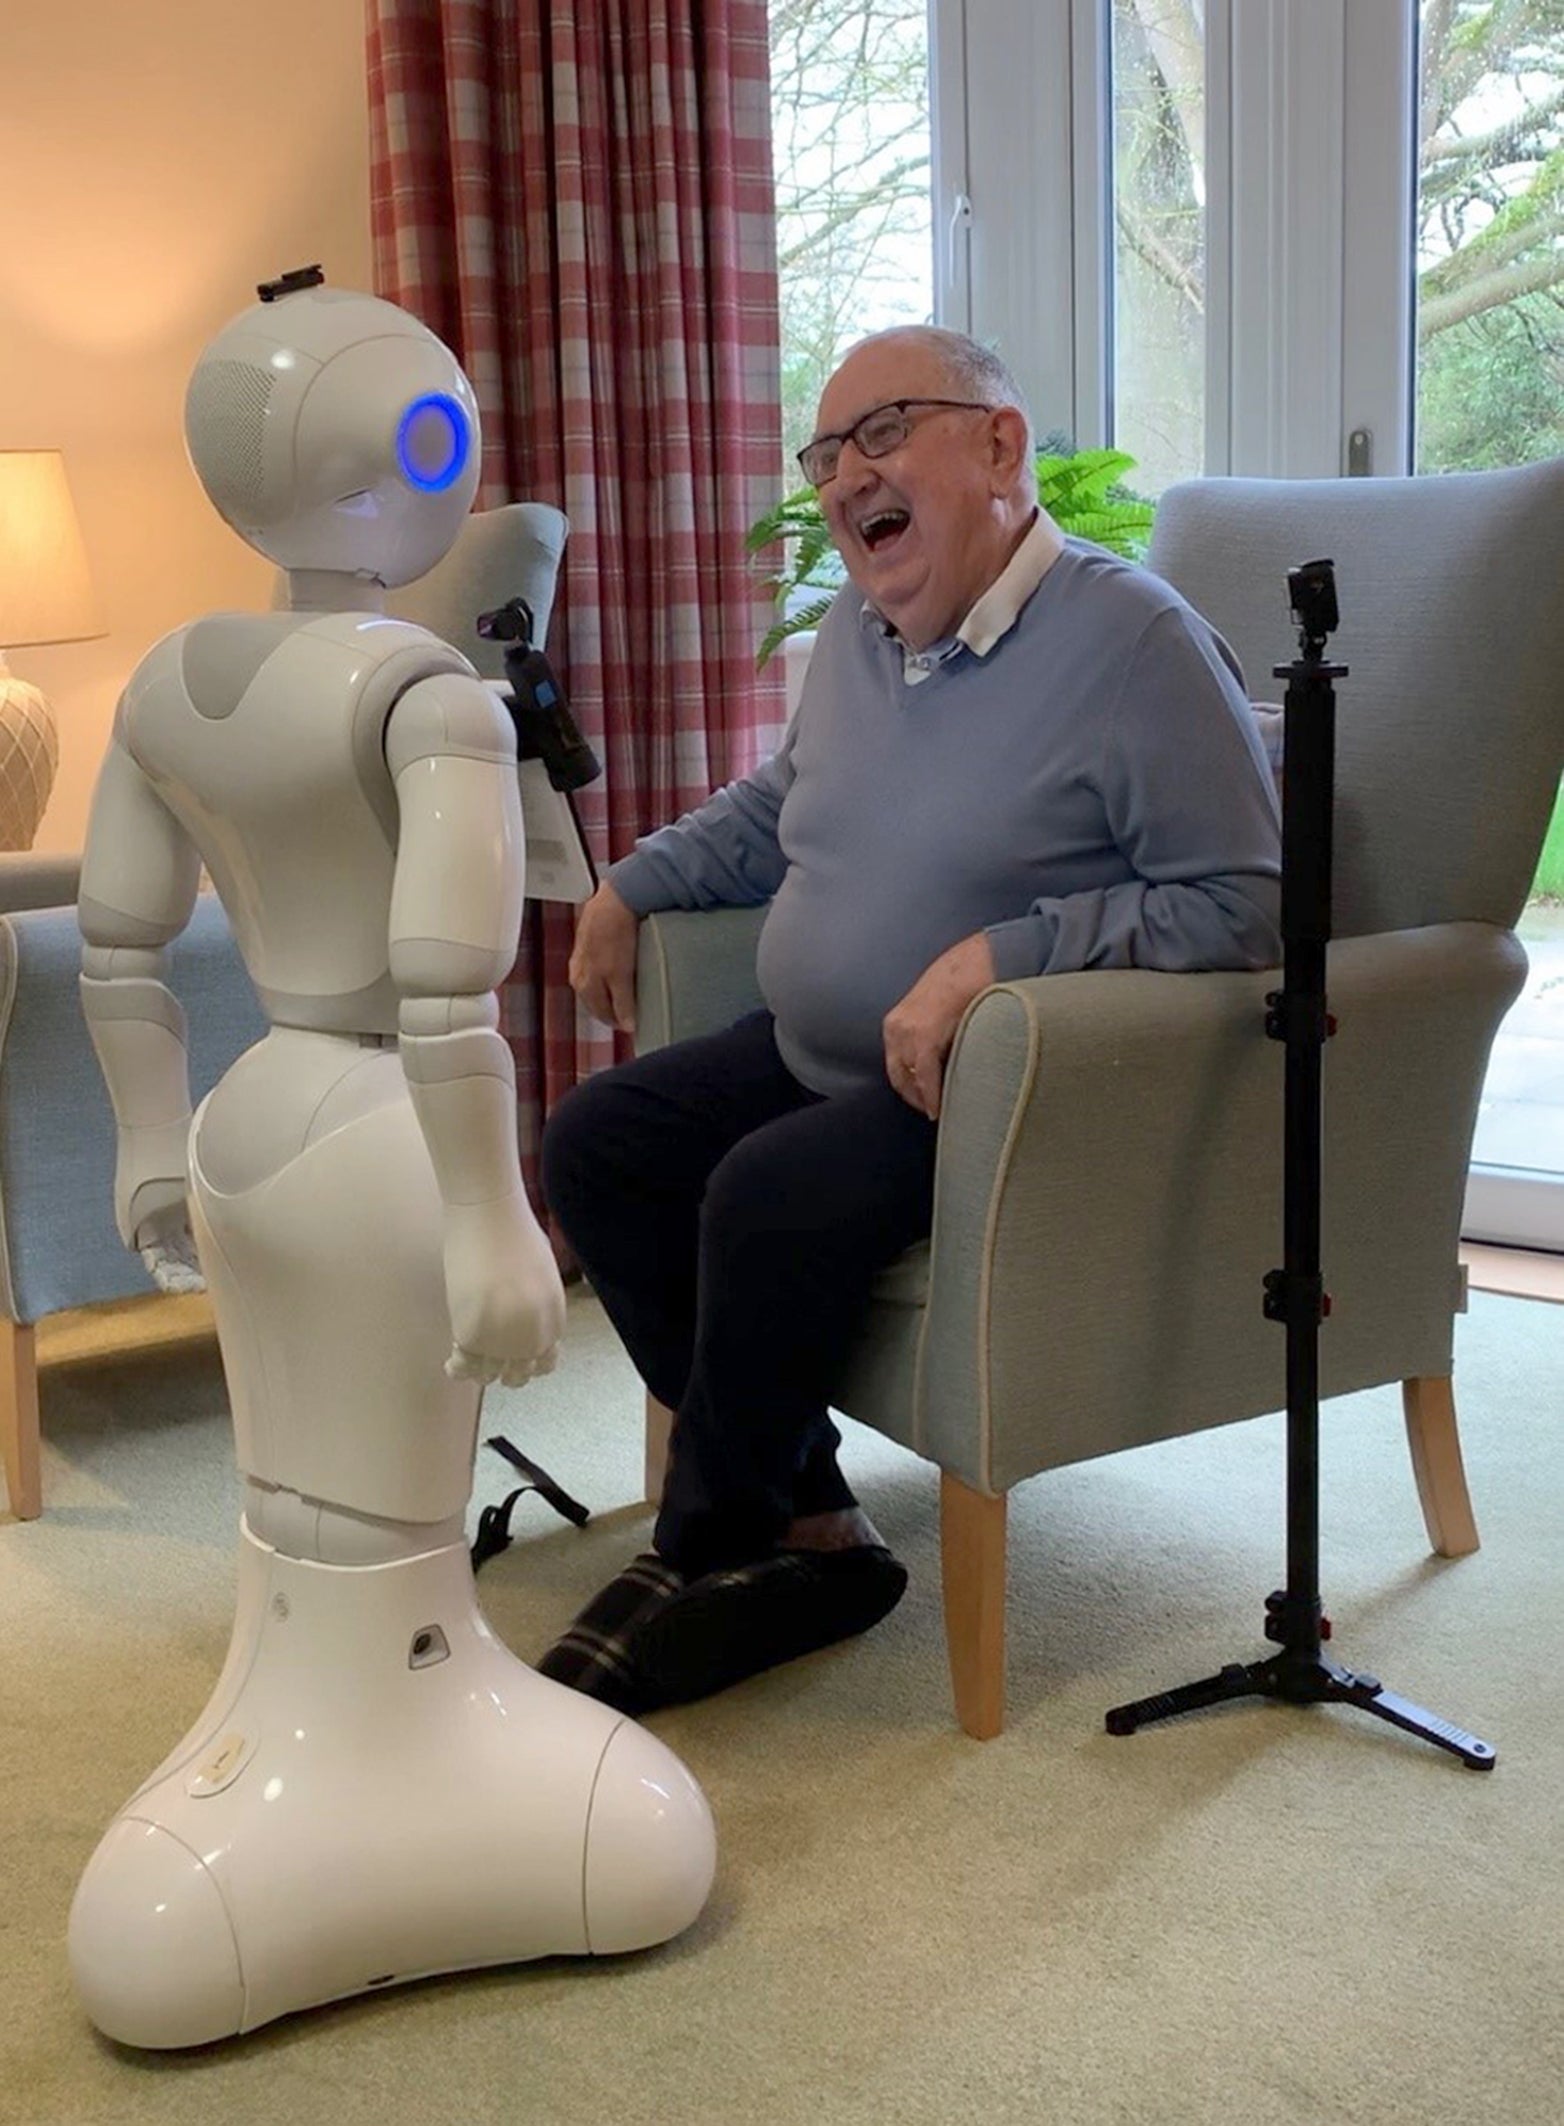 Pepper the robot with an elderly man